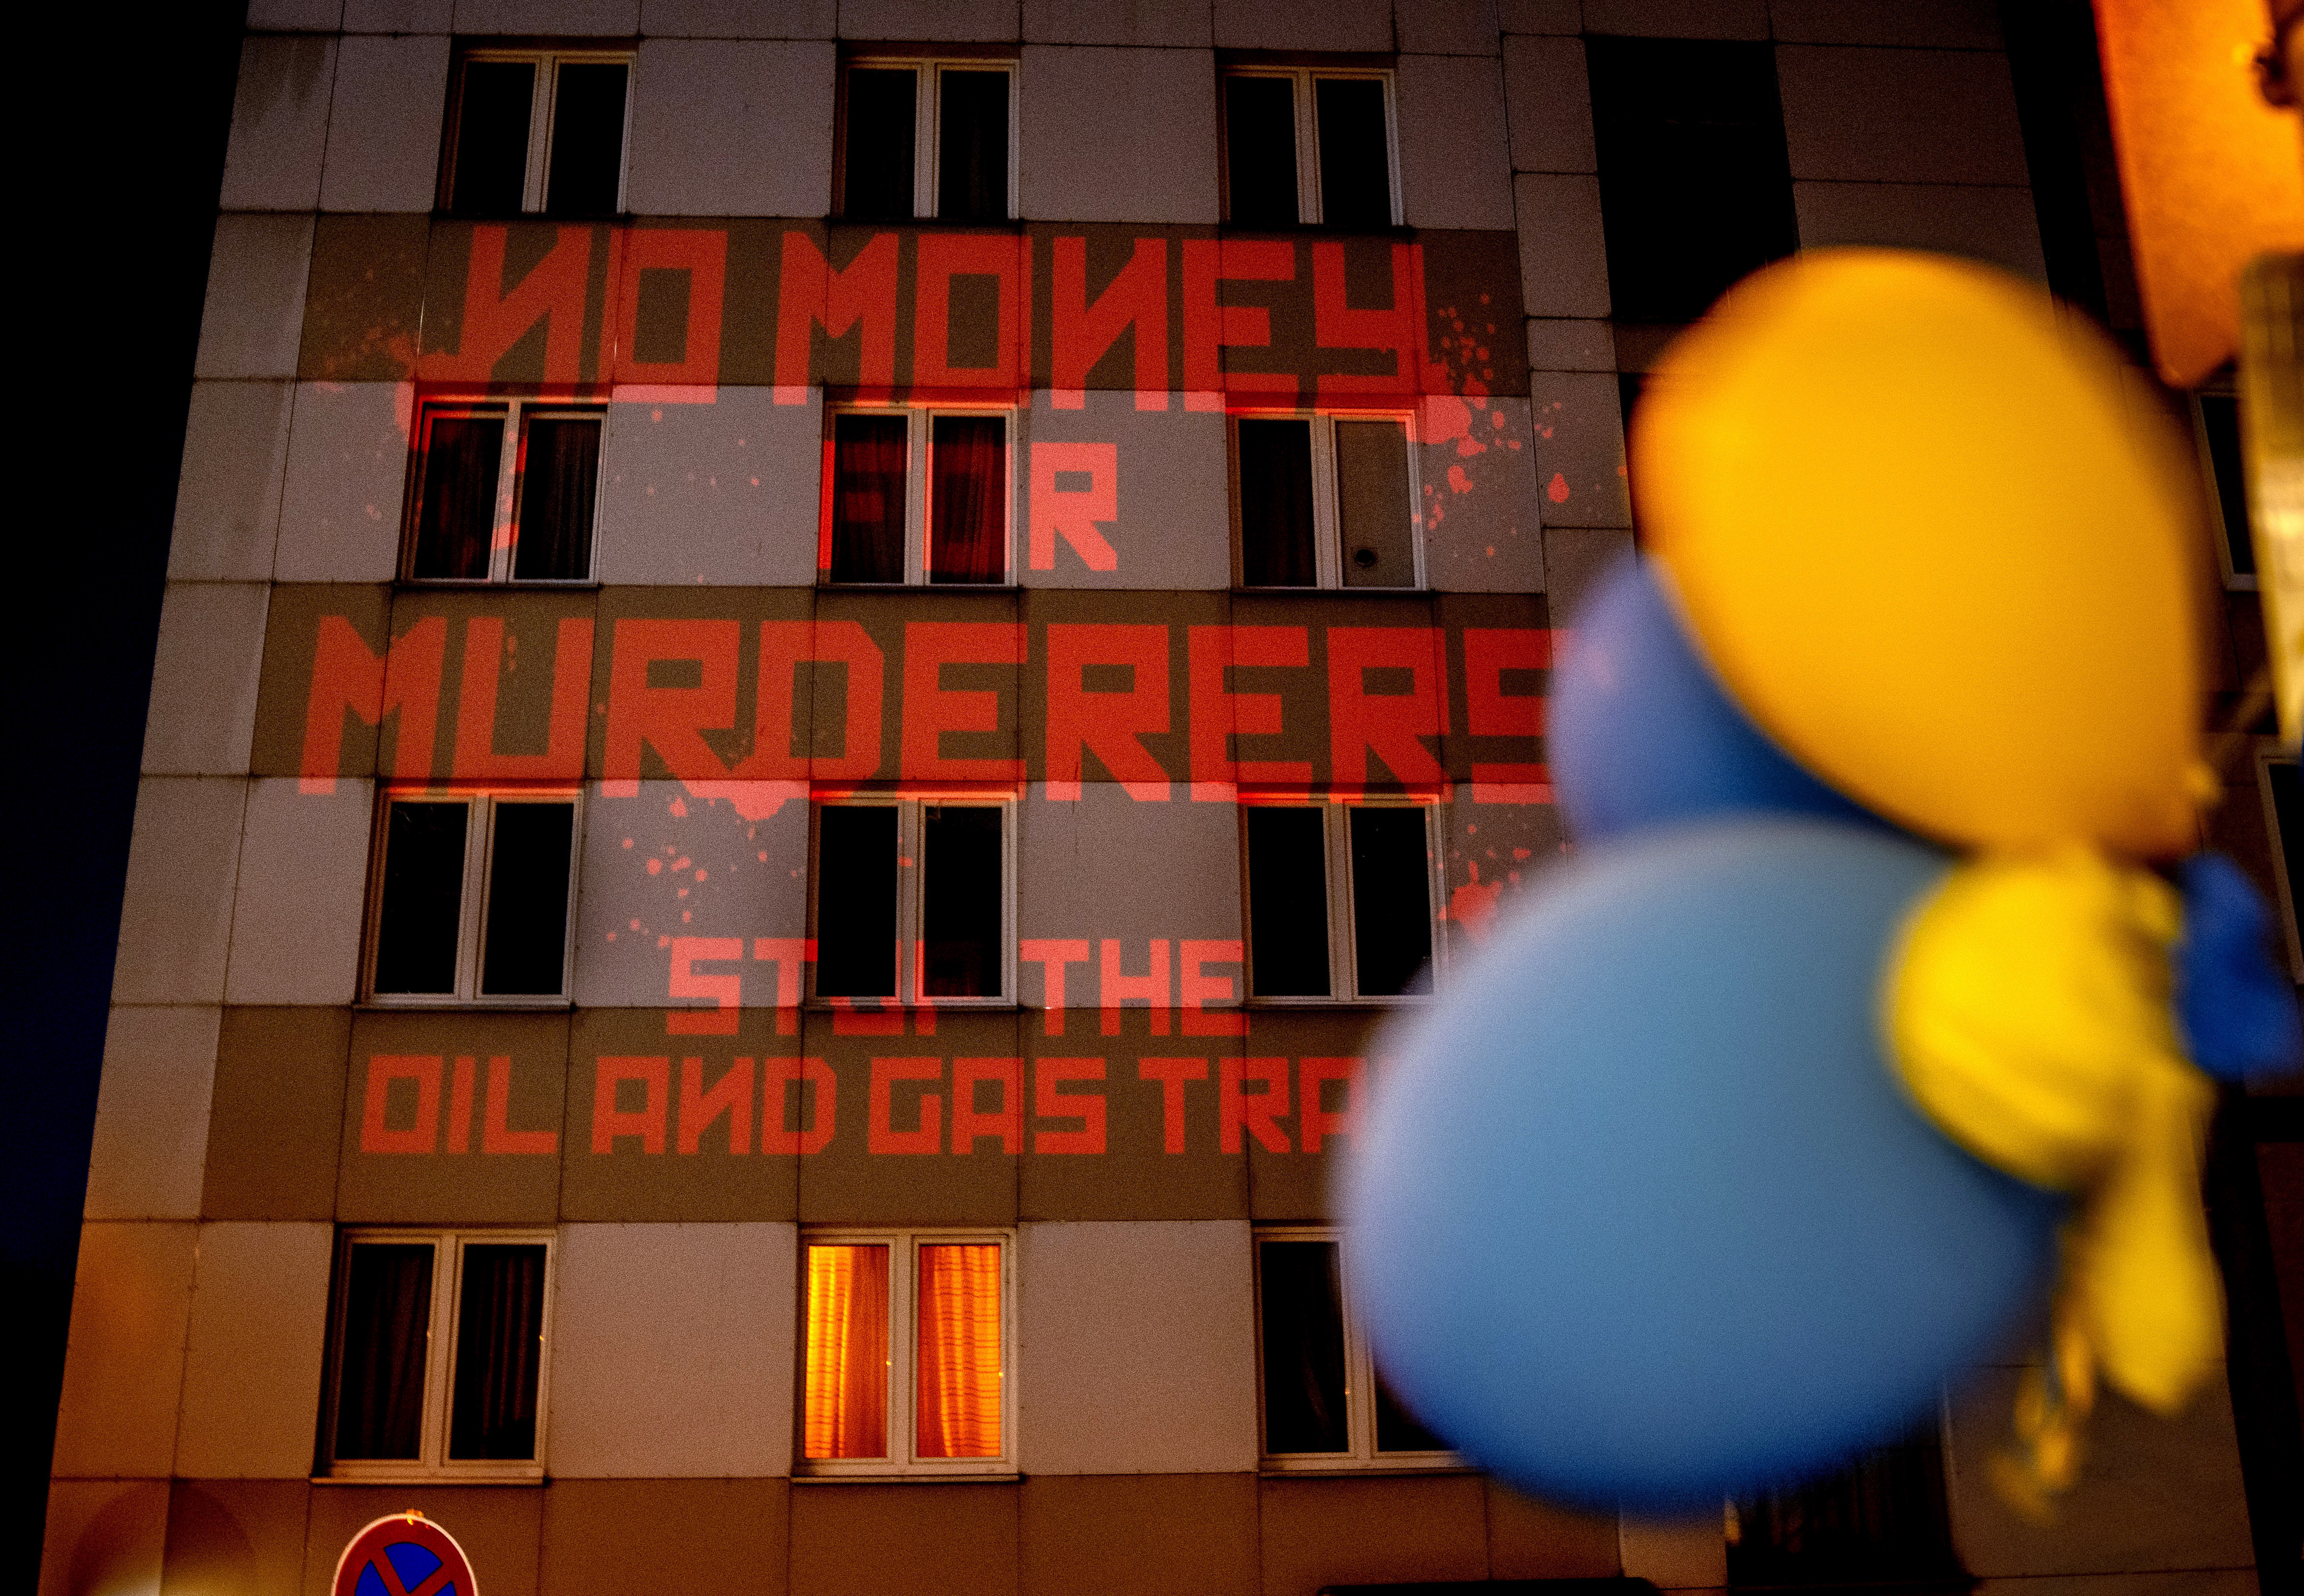 “不要钱给凶手，停止石油和天然气贸易”的字样被投影到墙上俄罗斯驻德国领事馆。